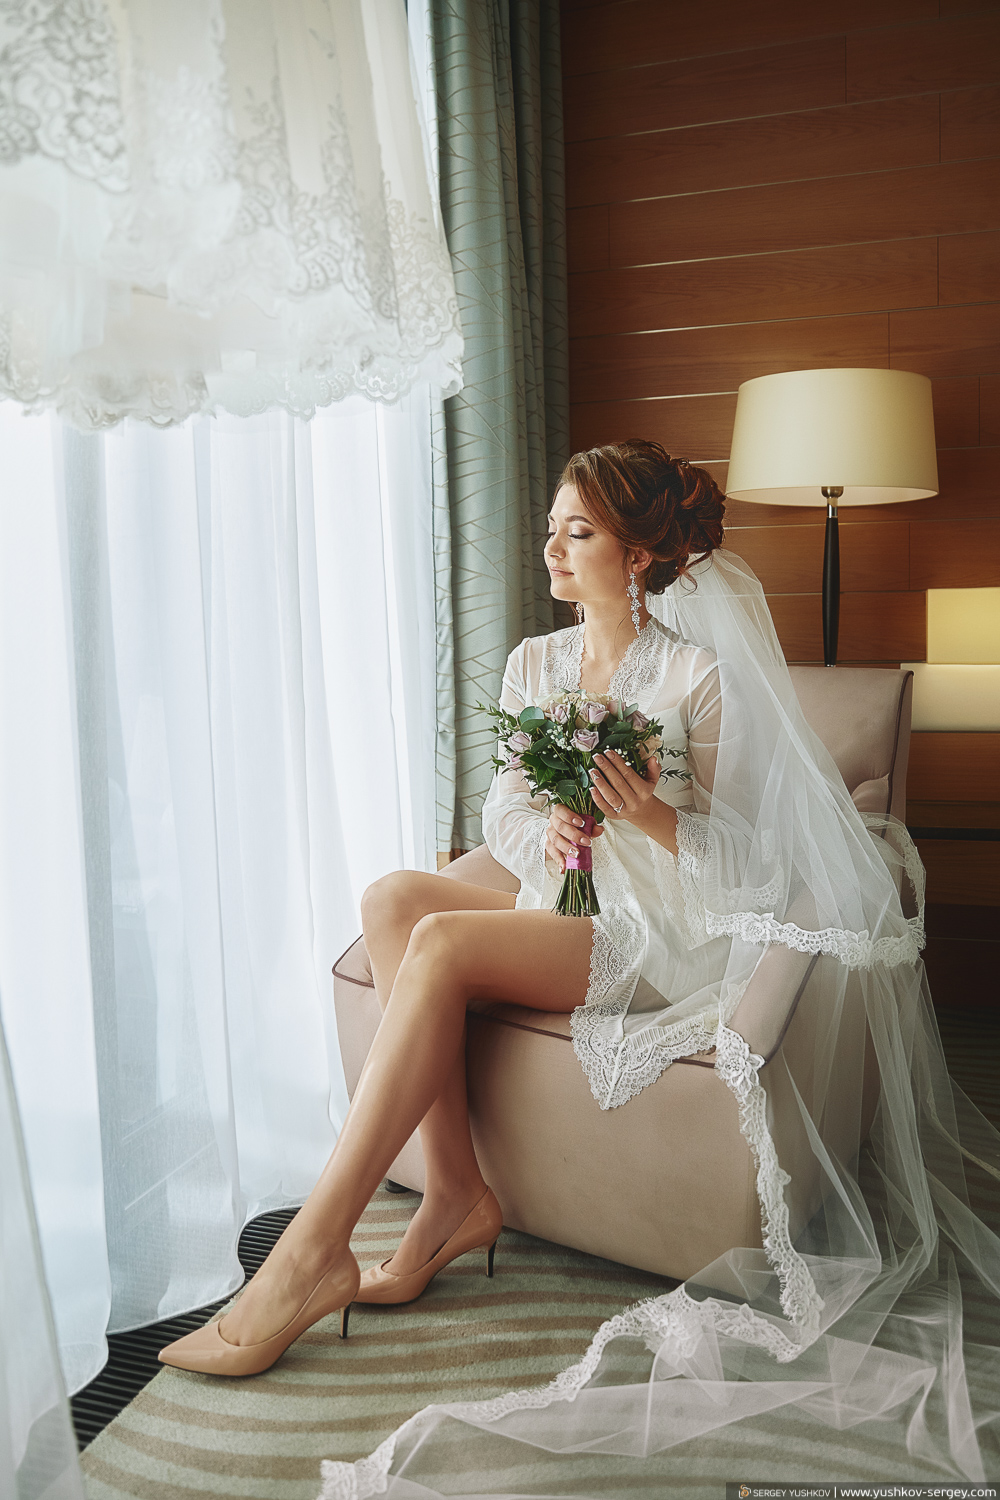 “Morning of the bride” at the Mriya hotel